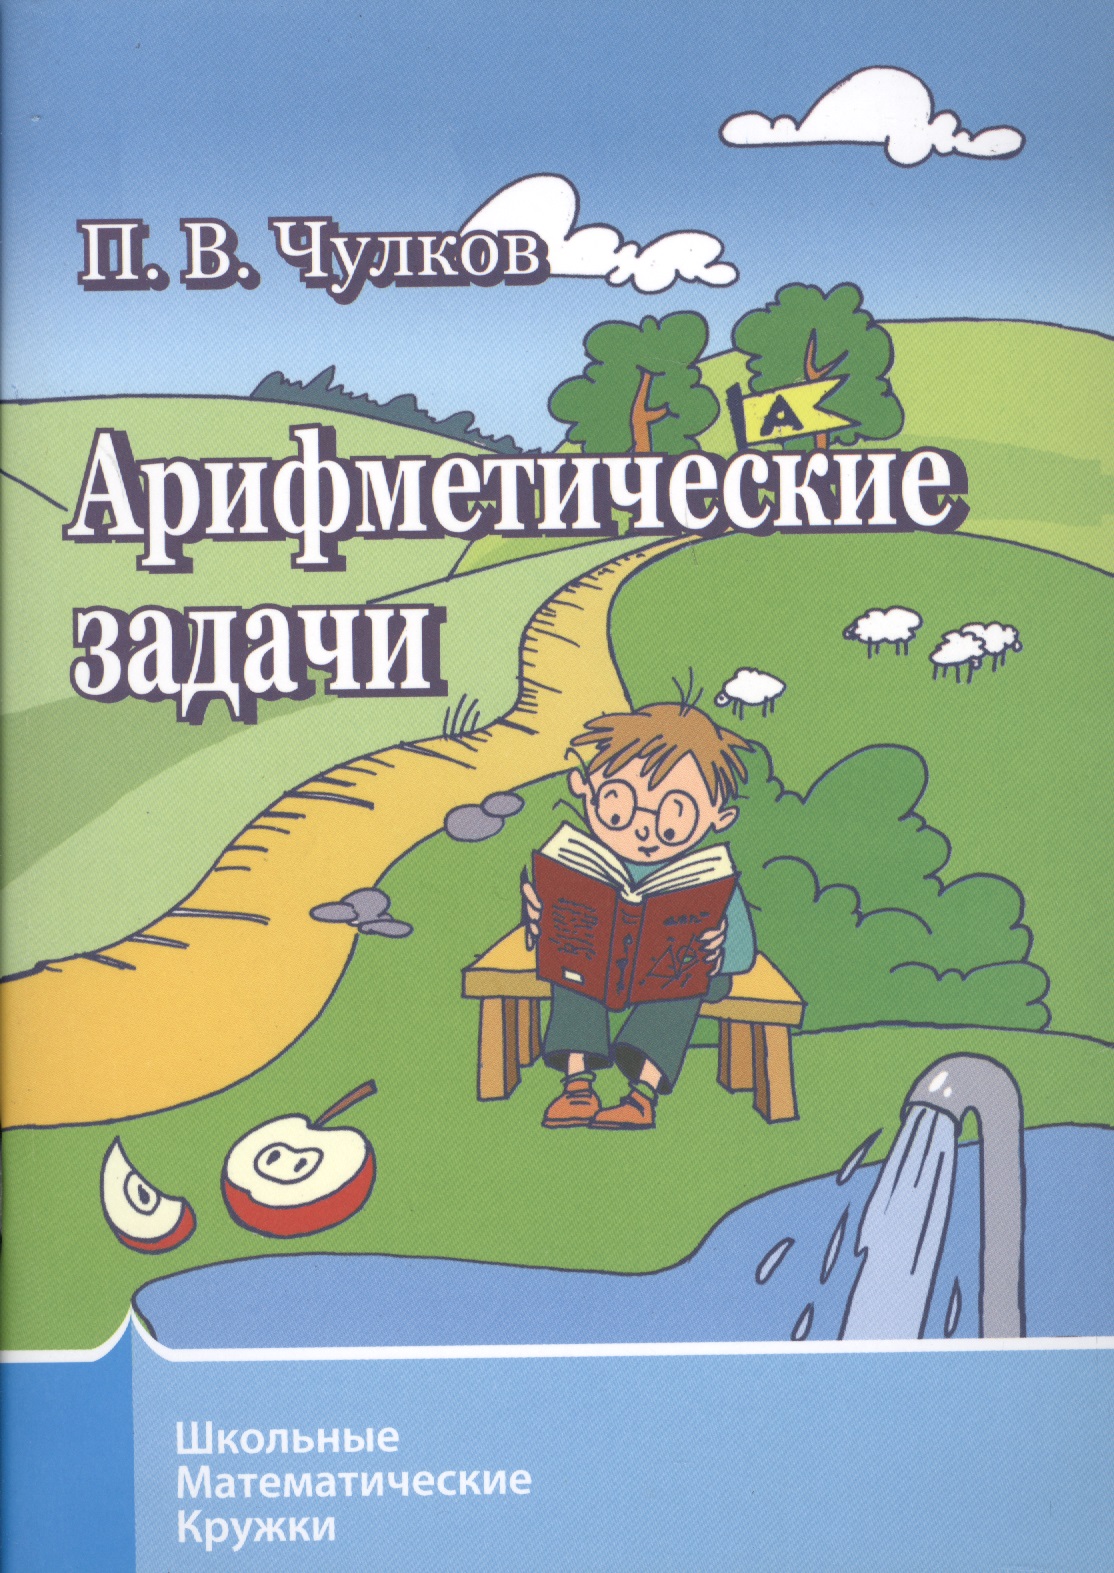 Чулков Павел Викторович - Арифметические задачи. 6-е издание, стереотипное